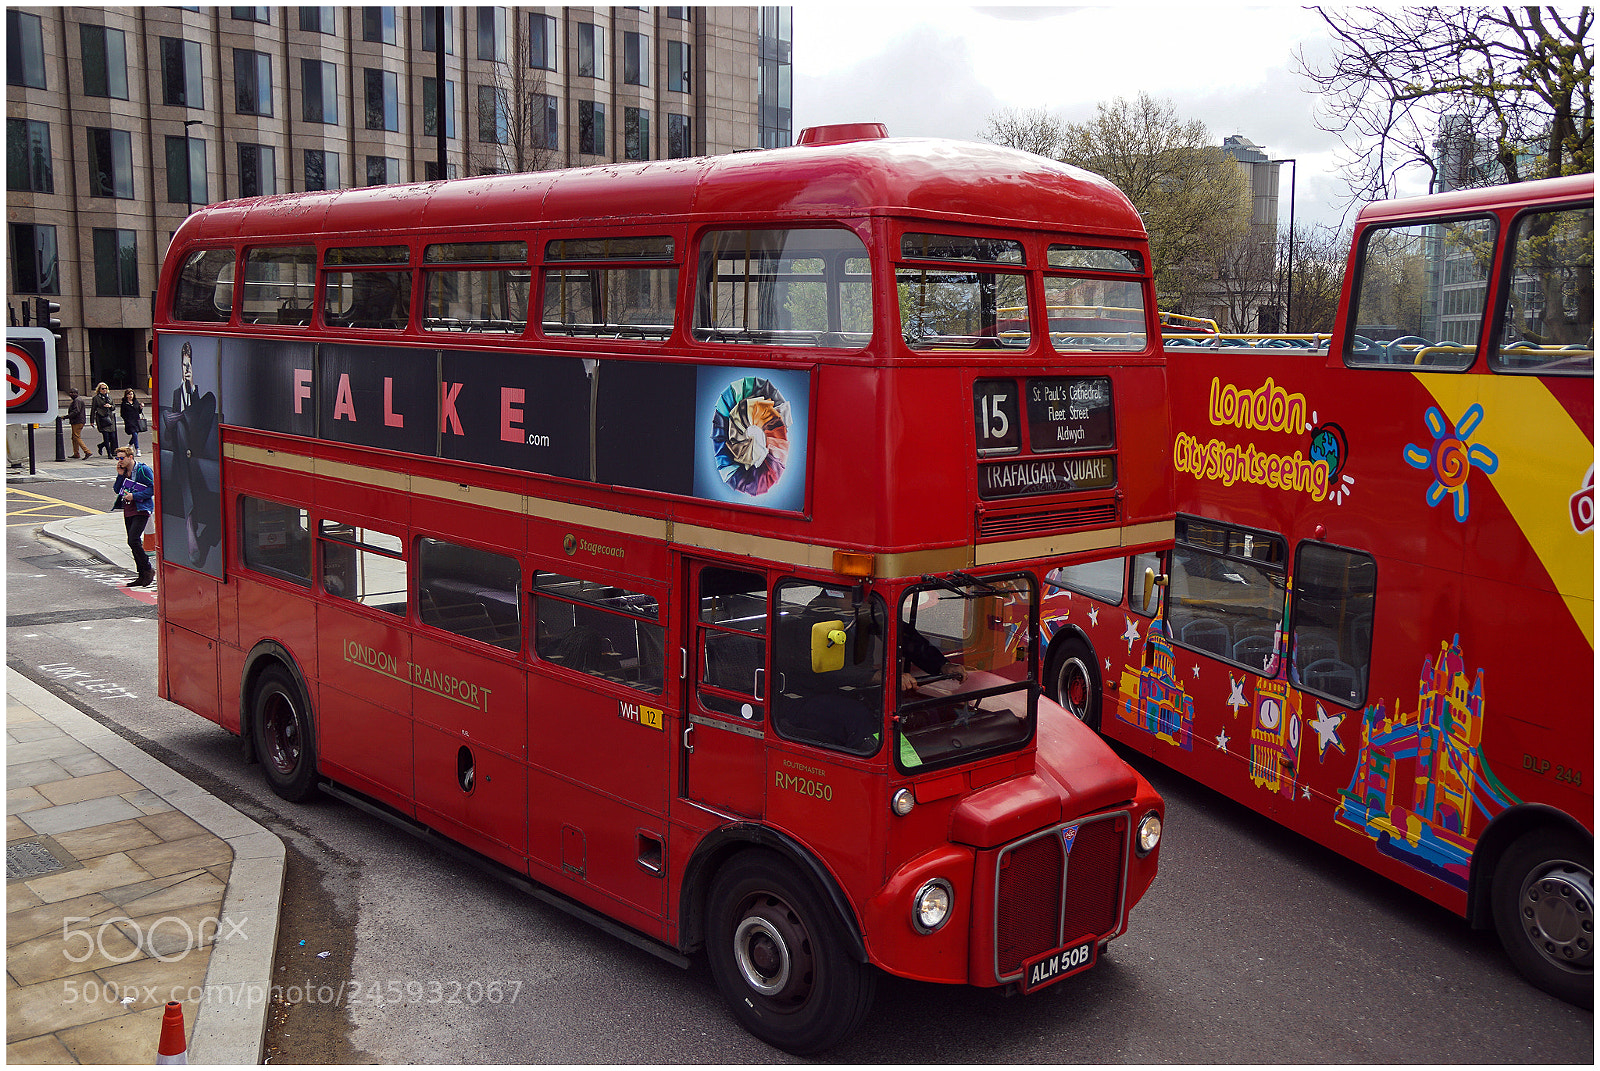 Sony SLT-A68 sample photo. London bus photography